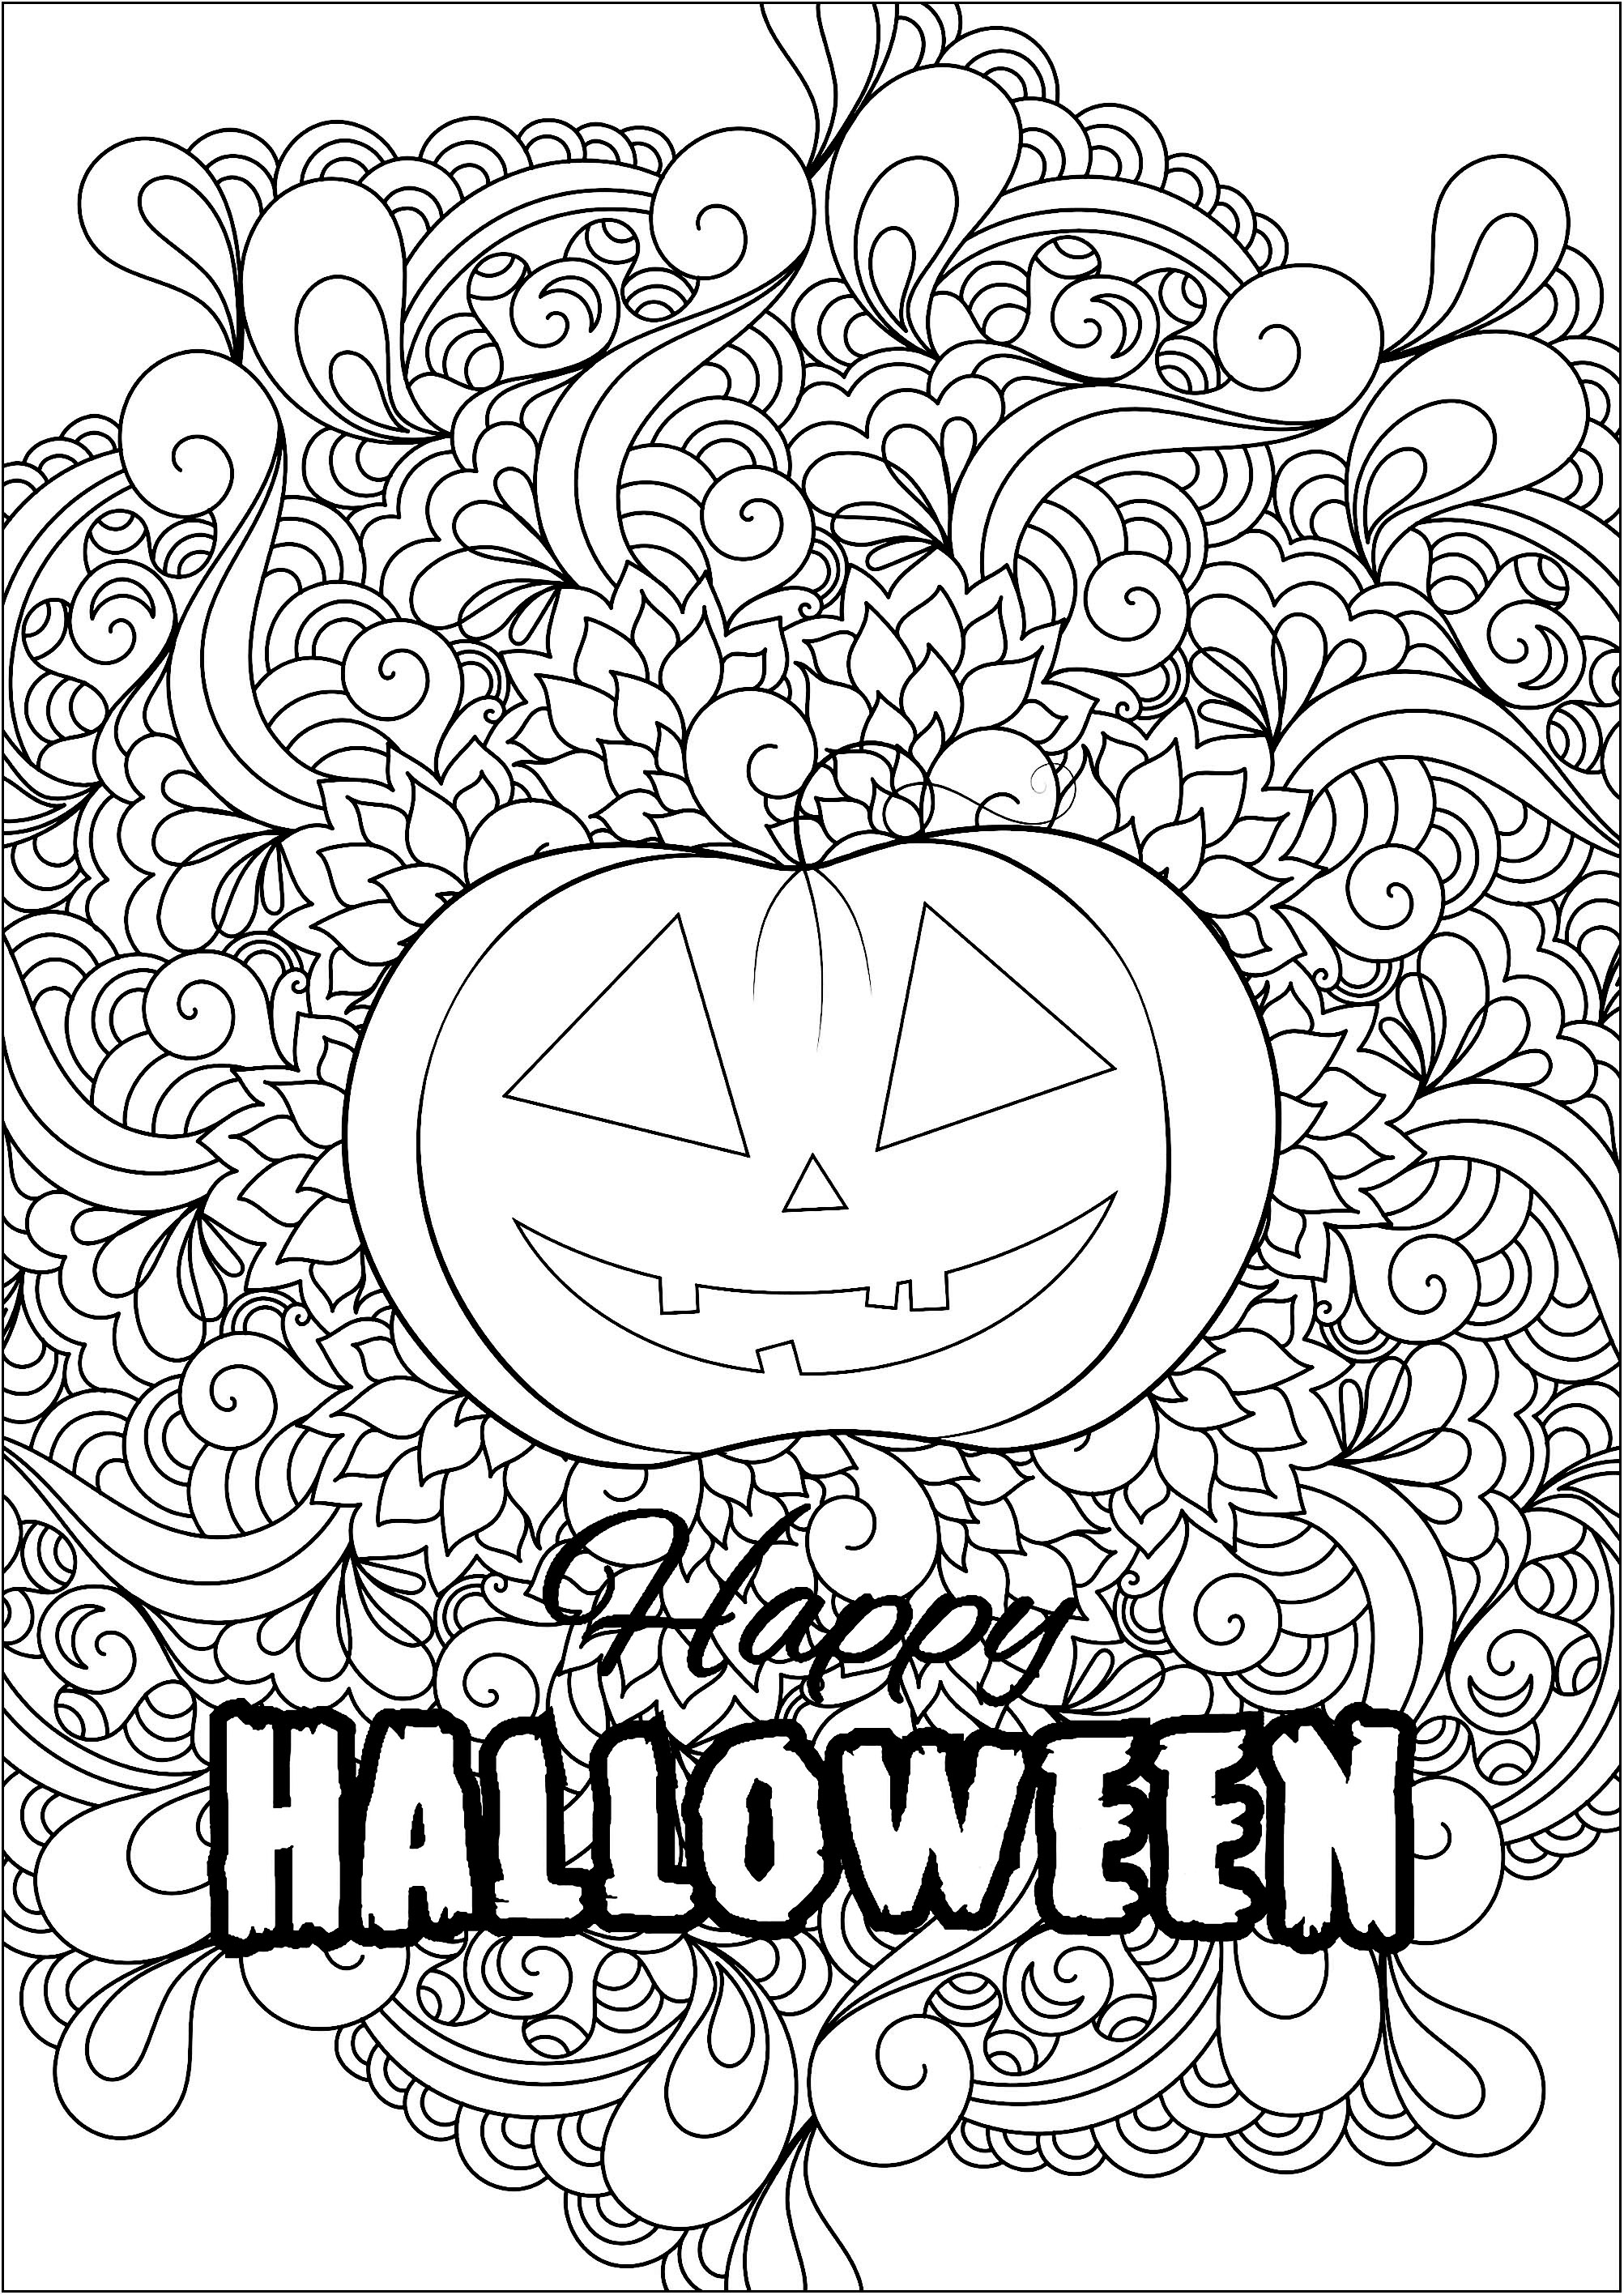 FREE! - Desenho do Dia das Bruxas – Abóbora de Halloween